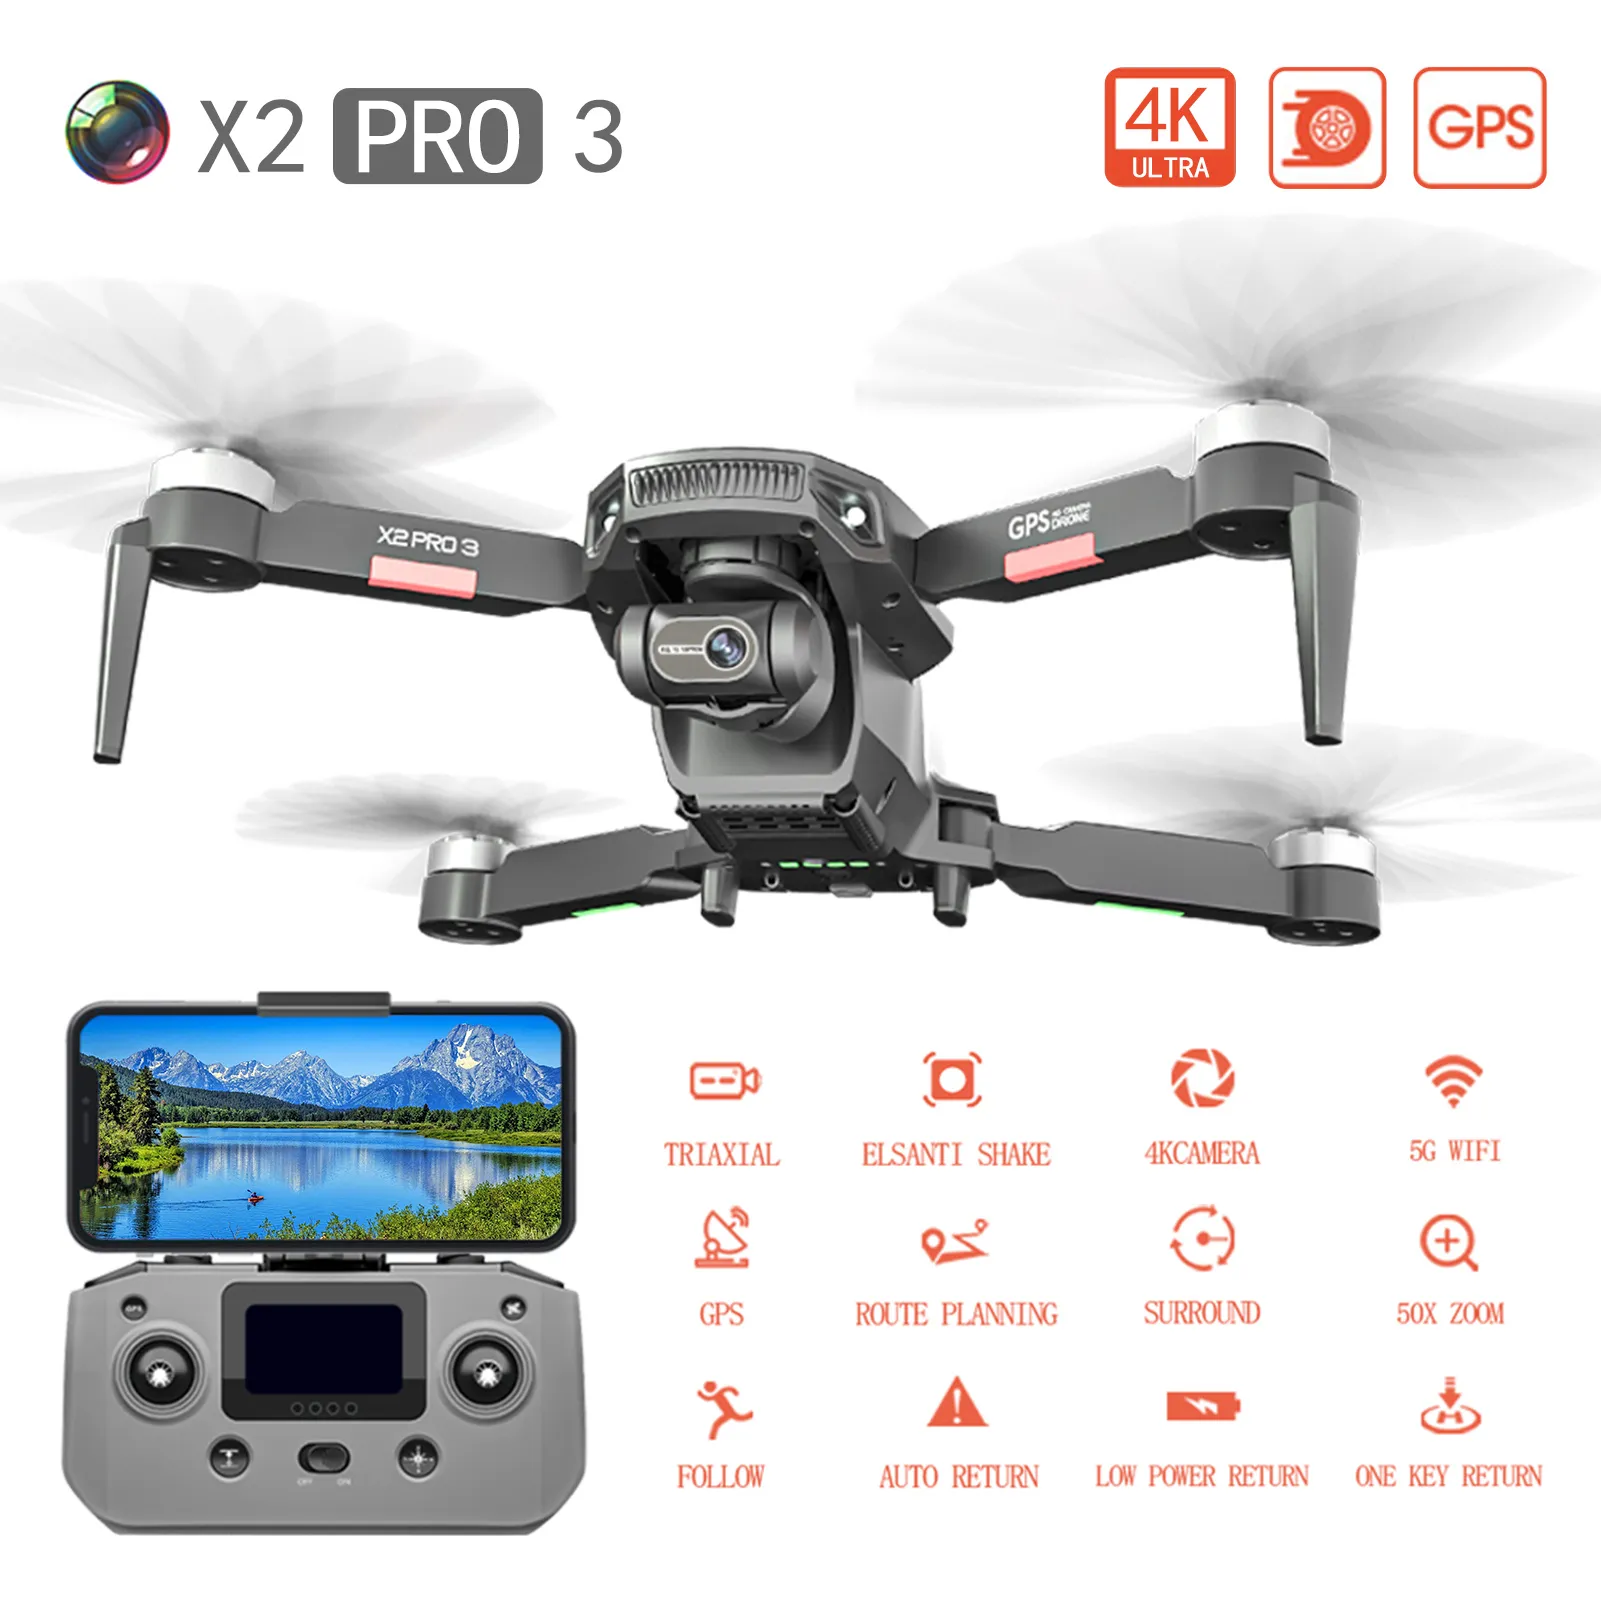 Drone RC professionale con fotocamera 4K, gimbal a 3 assi, motore brushless, FPV WiFi 5G, GPS, distanza di controllo di 1200 m - Giocattolo quadricottero definitivo per la fotografia aerea